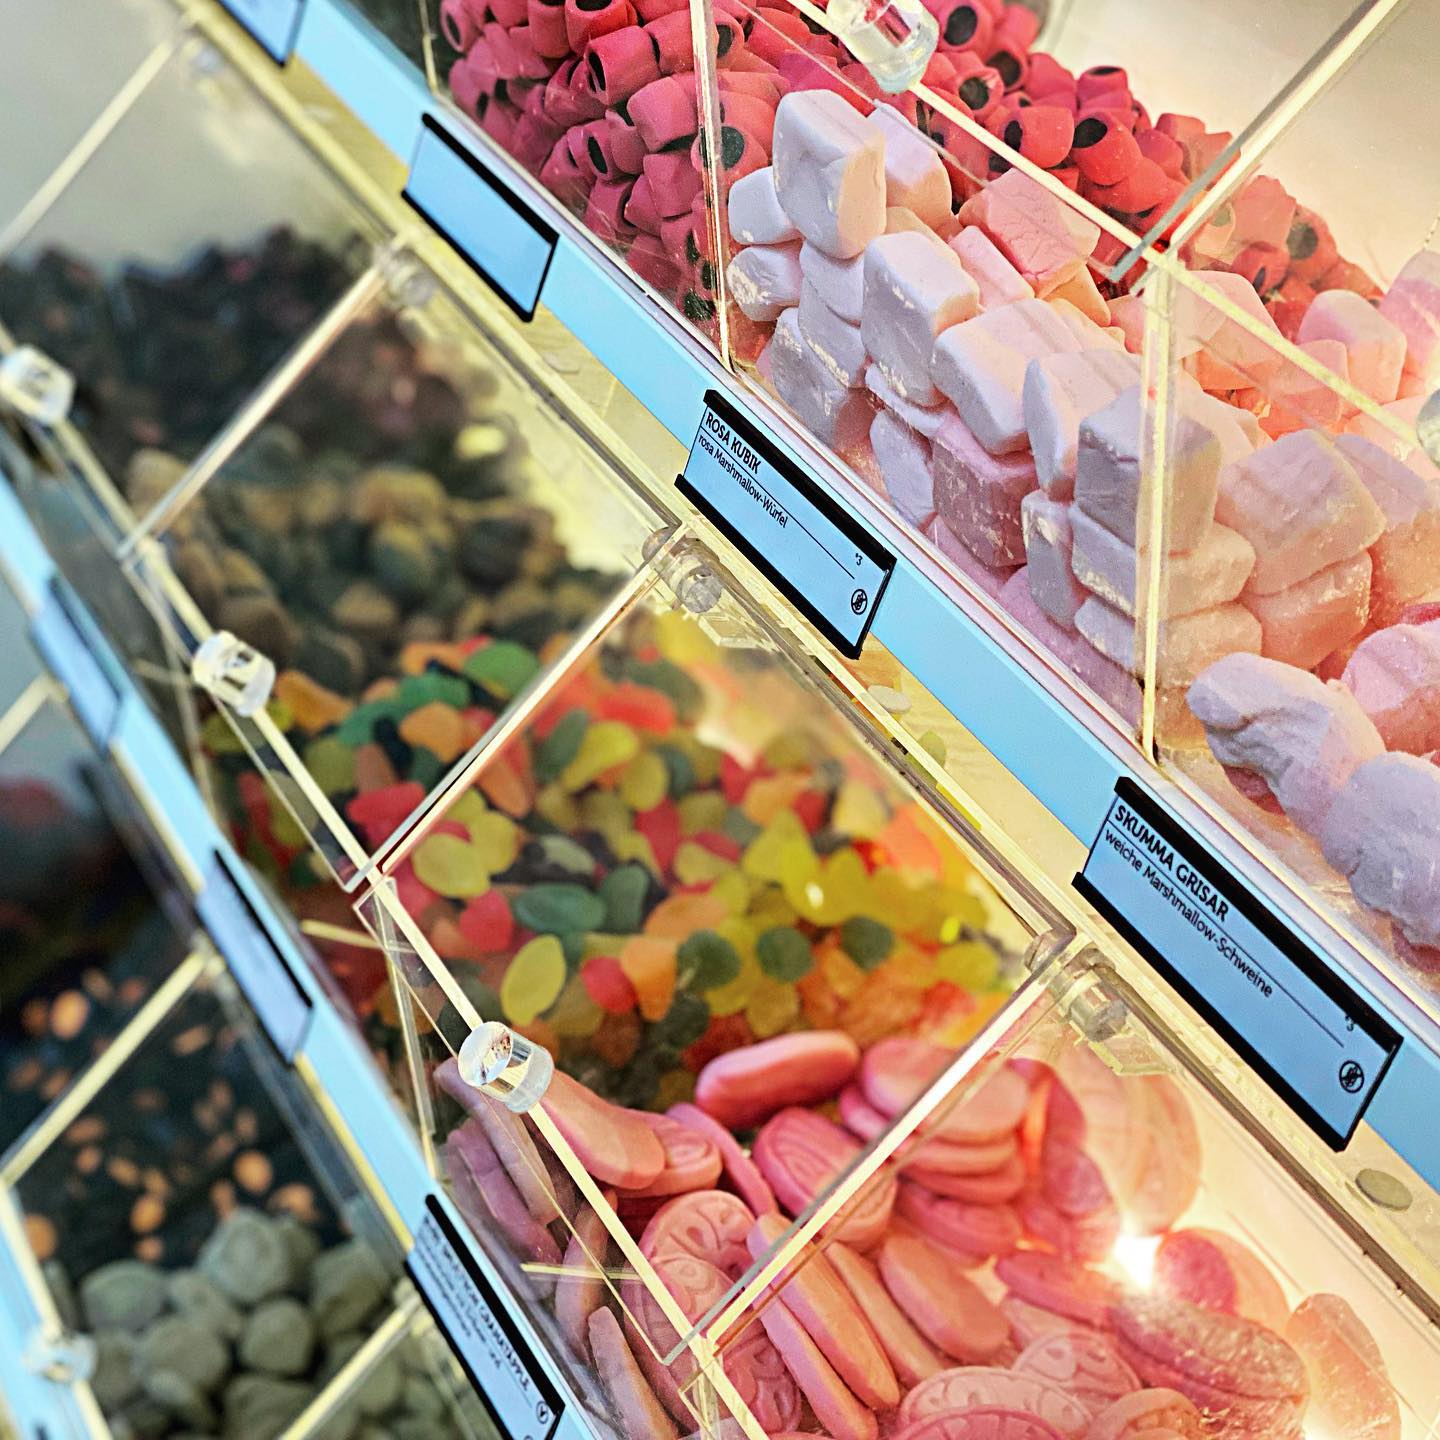 Naschhaus - Dein neuer Lieblingsladen für außergewöhnliche Süßigkeiten aus Skandinavien in Berlin-Friedrichshain 15